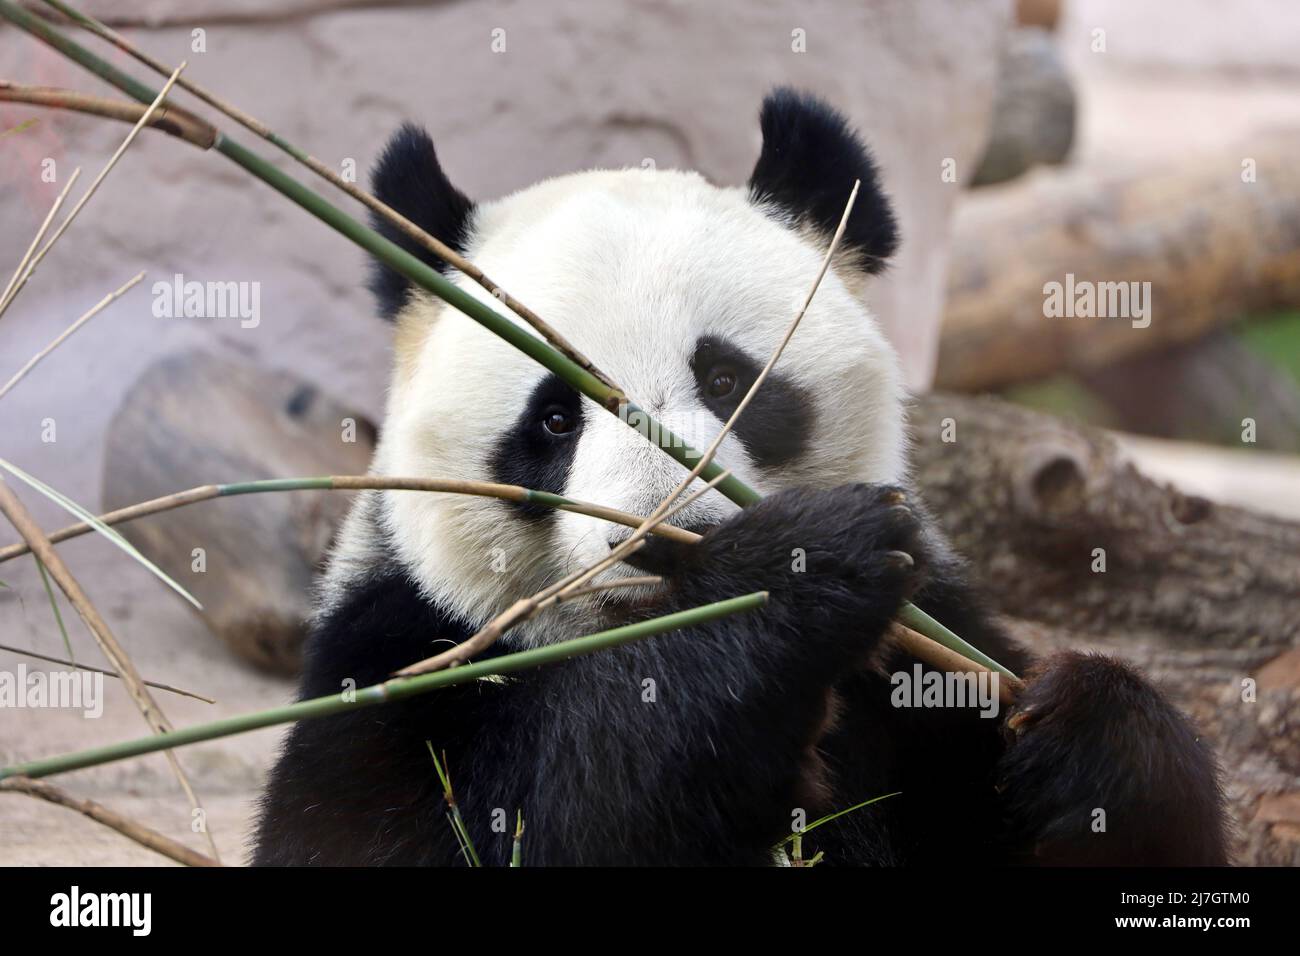 Panda comiendo brotes de bambú en un zoológico, retrato del oso blanco y negro en peligro de extinción Foto de stock